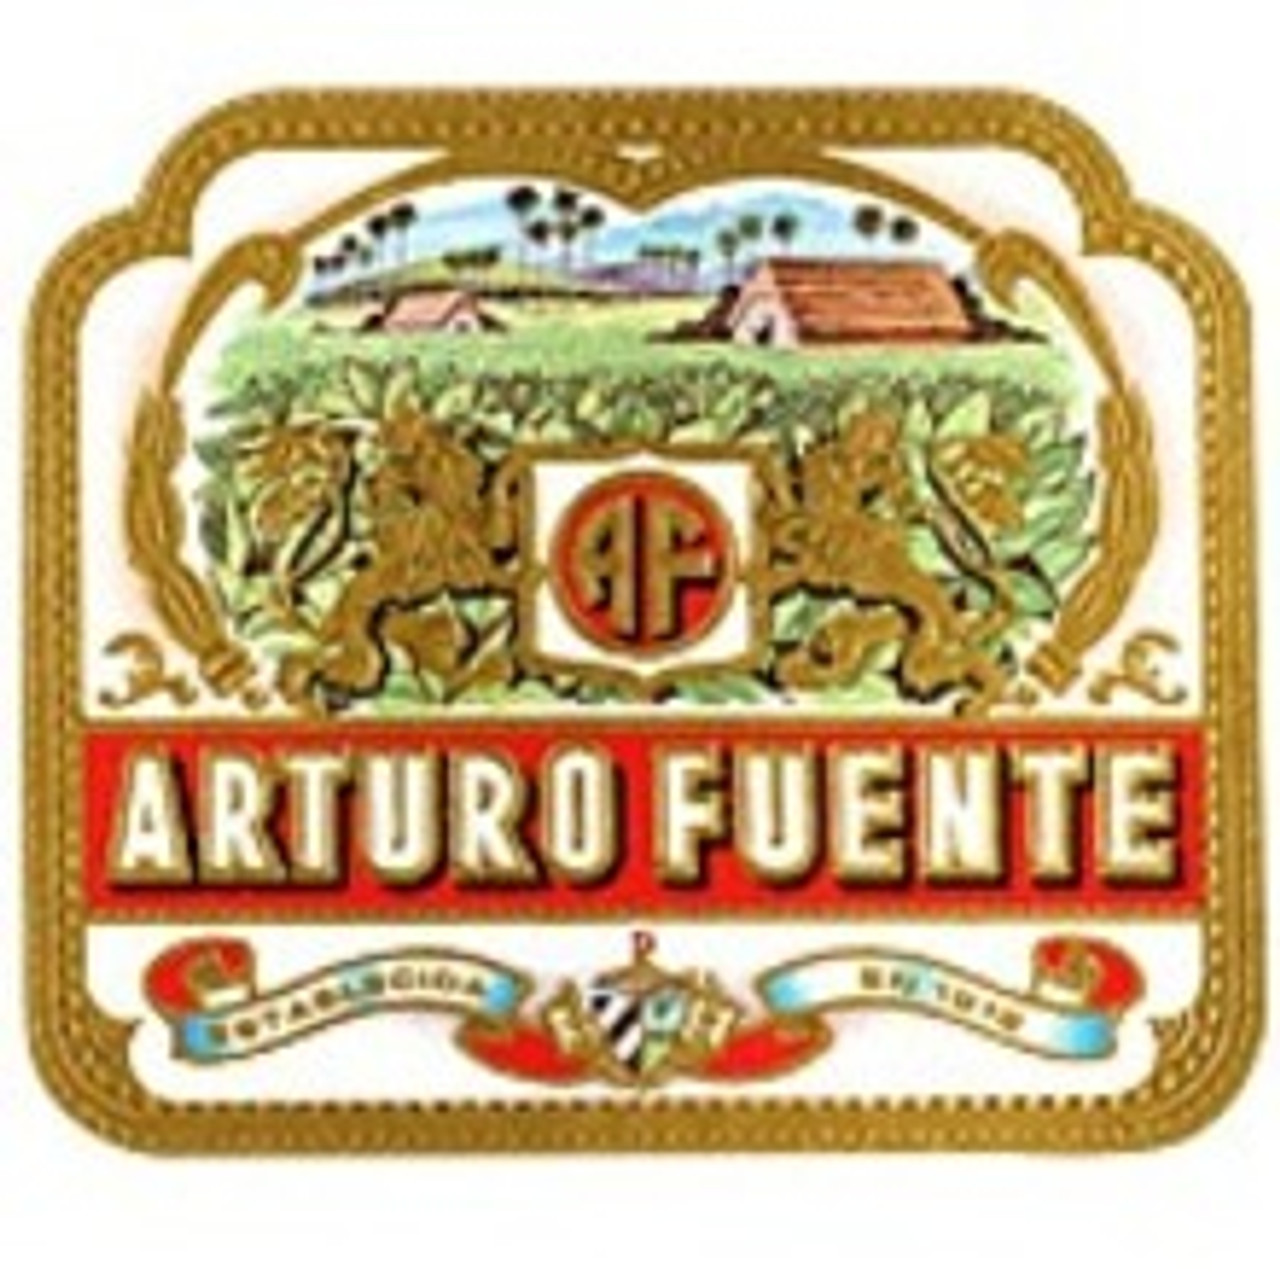 Arturo Fuente Logo